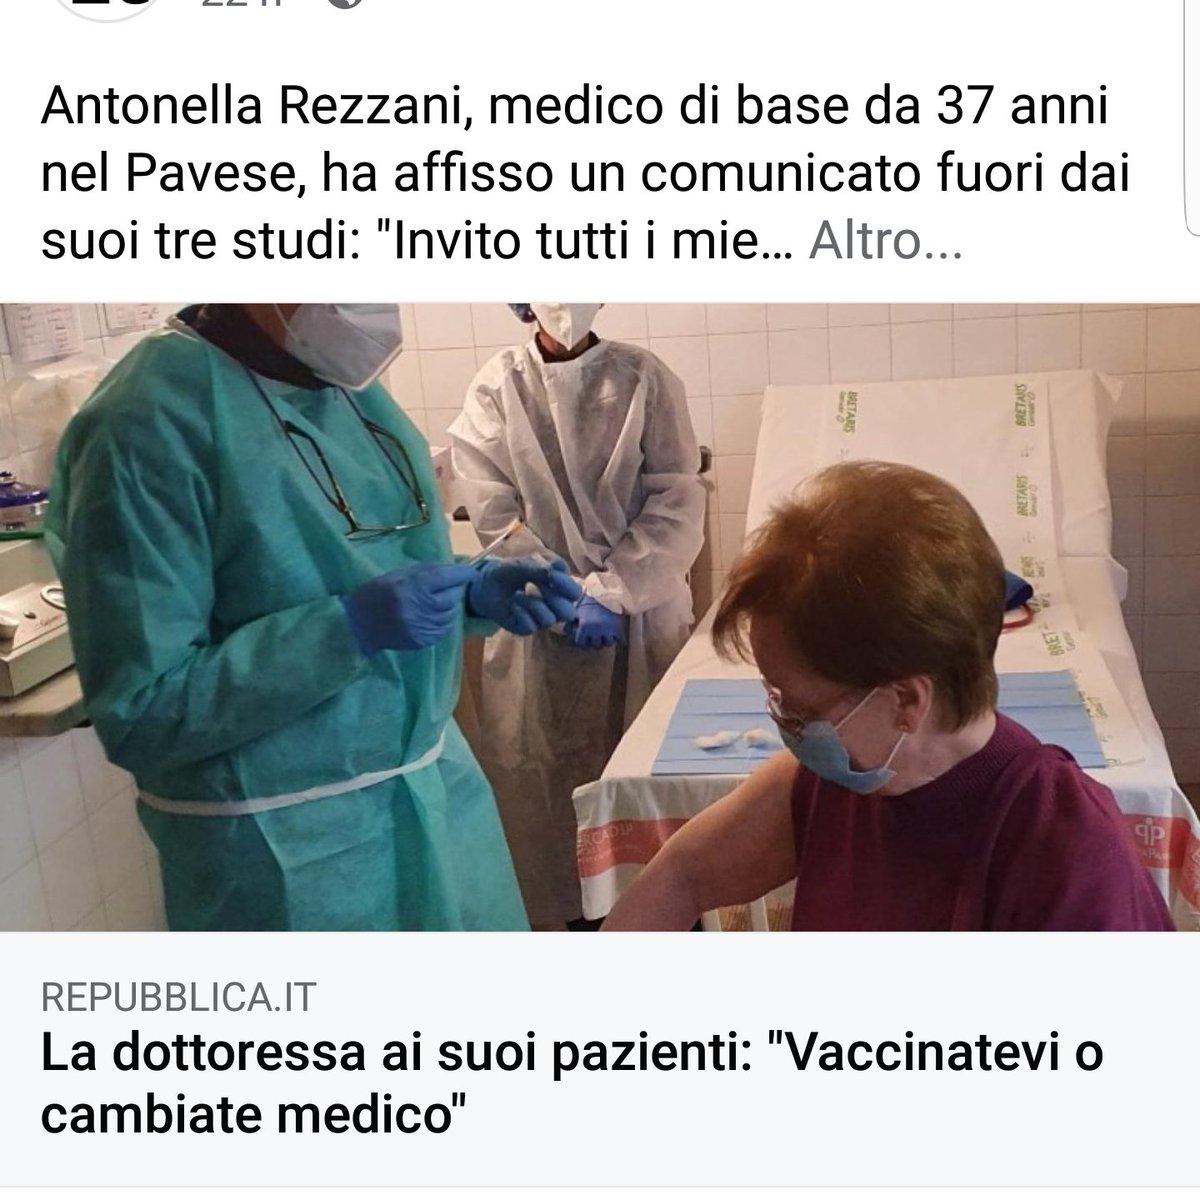 'Il medico dovrebbe cambiar mestiere e voi cambiate medico e DENUNCIATE'  #Vergognatevi 
#vaccini 
#DRAGHIINGALERA
#PresidenzaDellaRepubblica